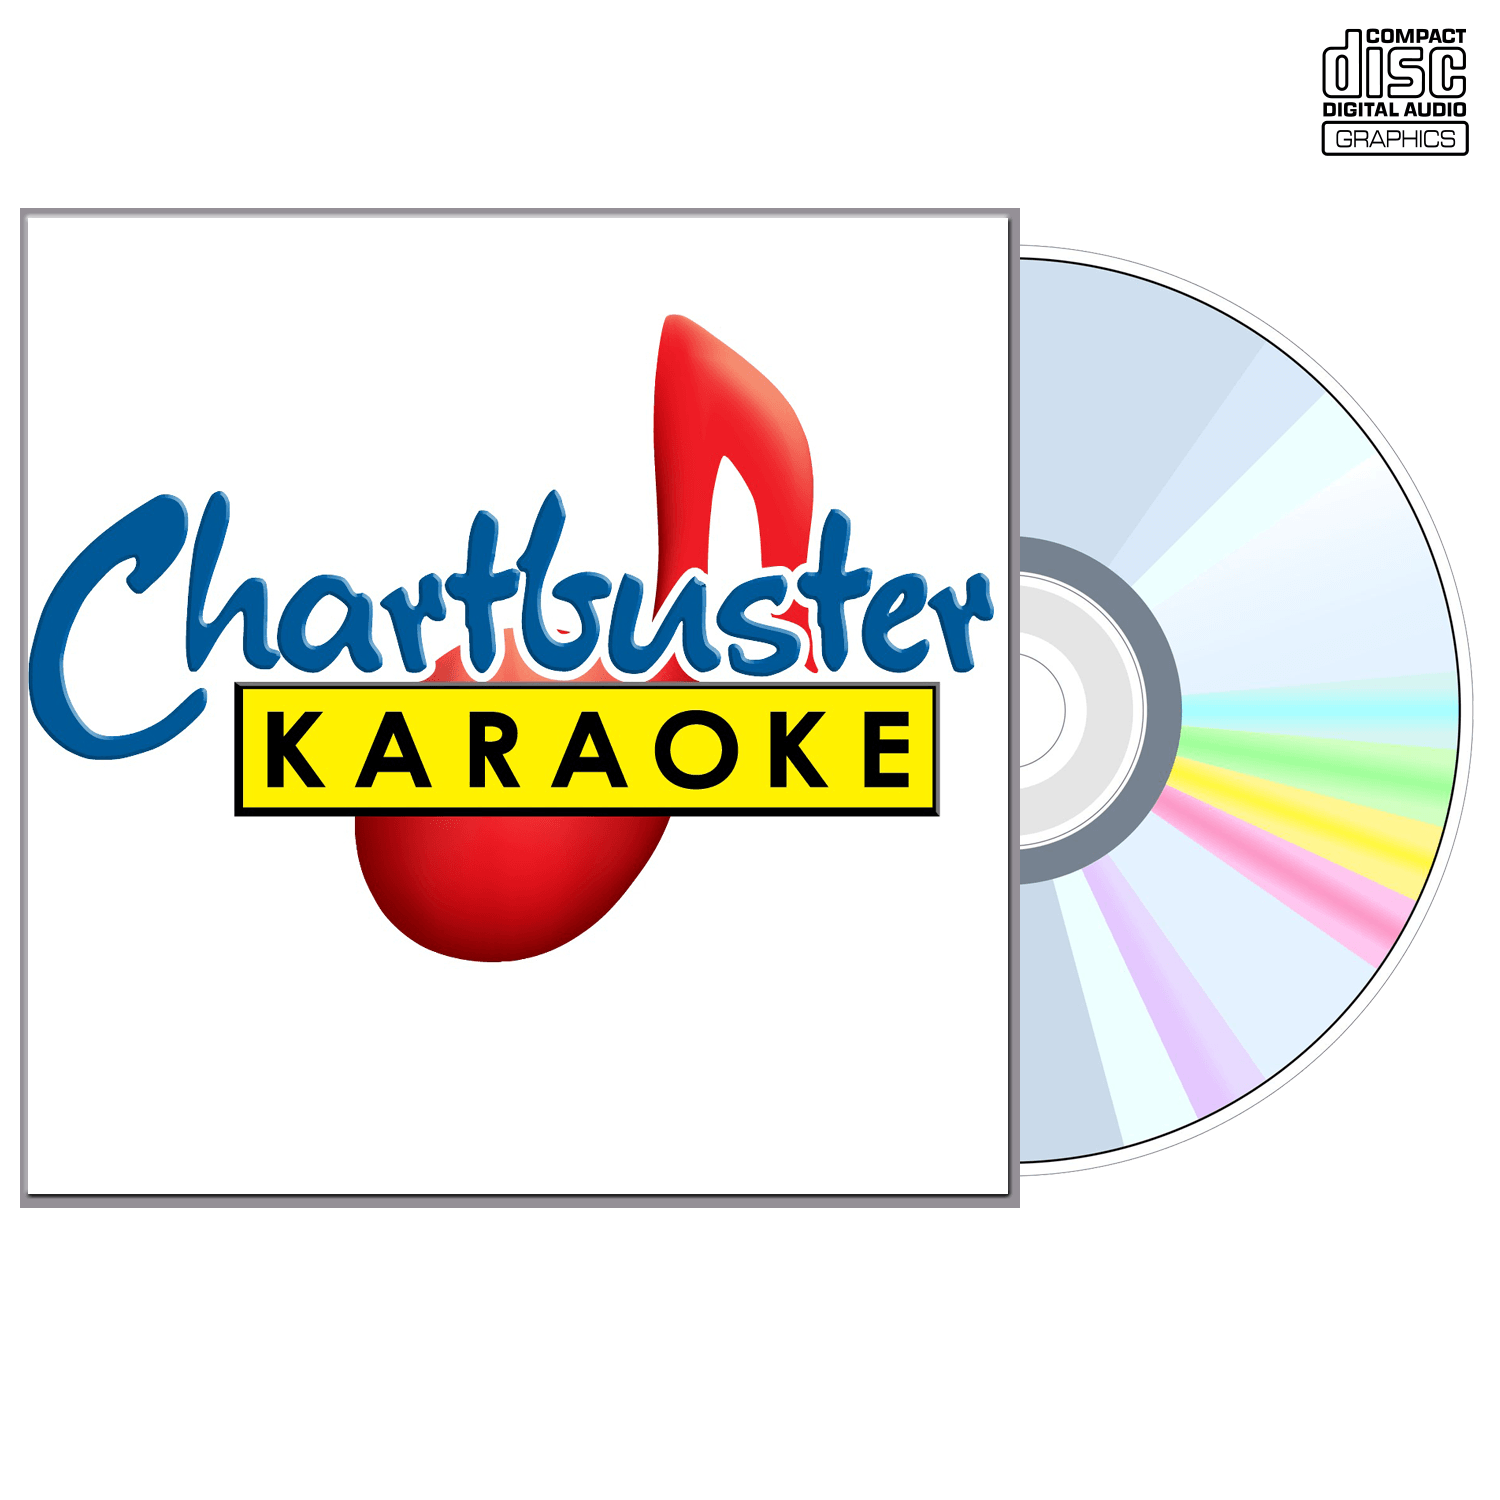 Webb Pierce - CD+G - Chartbuster Karaoke - Karaoke Home Entertainment